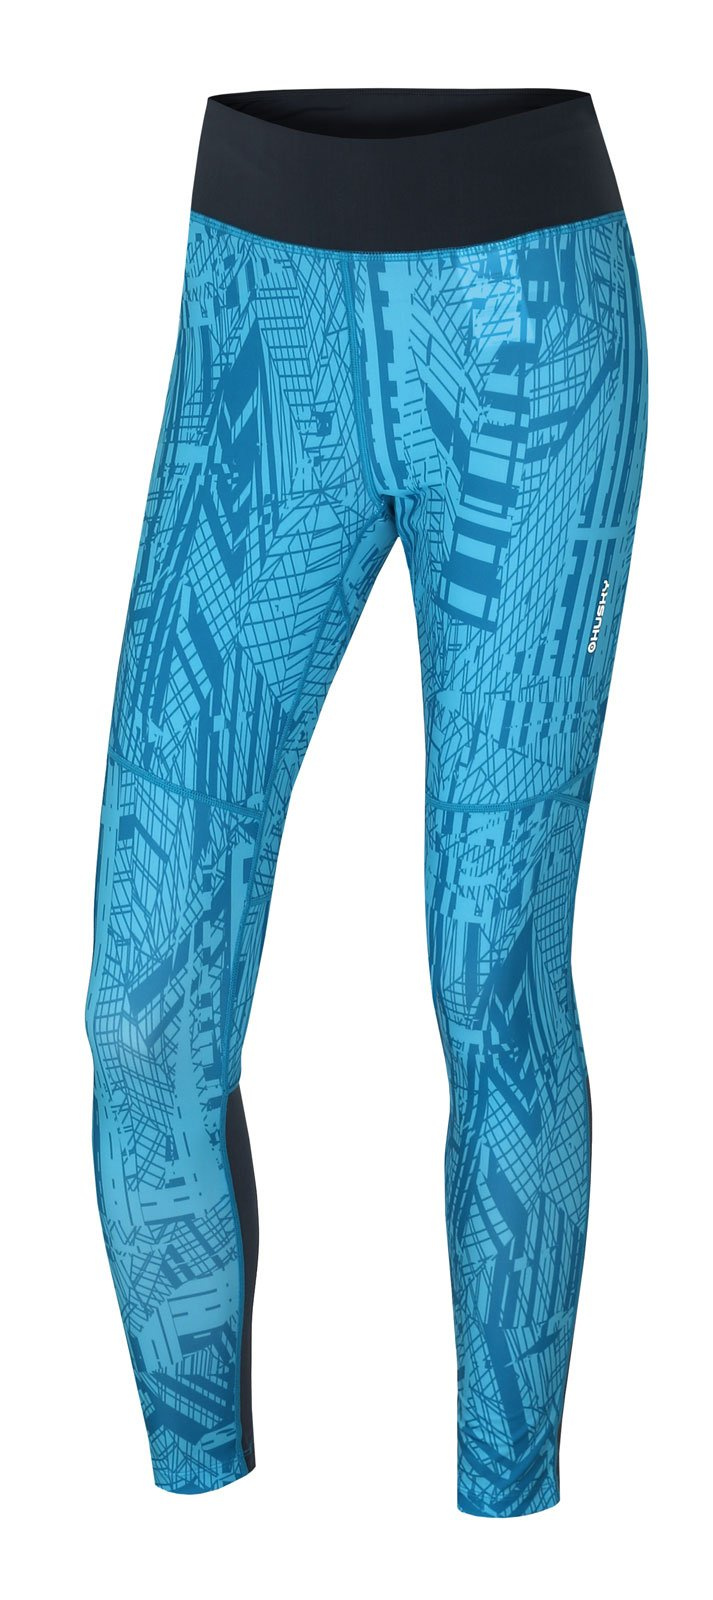 Husky Darby Long L modrá, XL Dámske športové nohavice